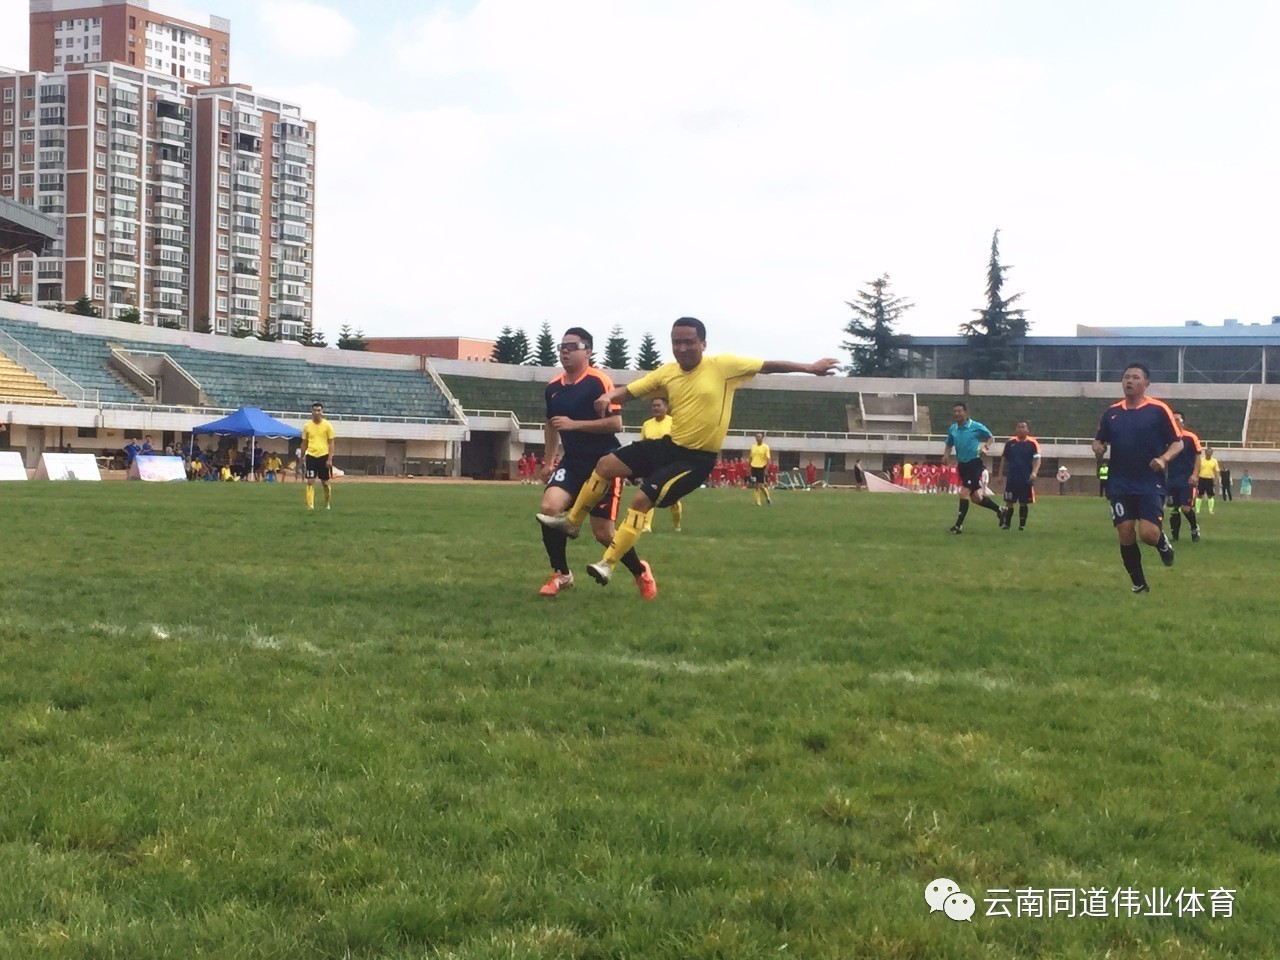 
云南省足球运动员大数据平台启动建设伟业(图)